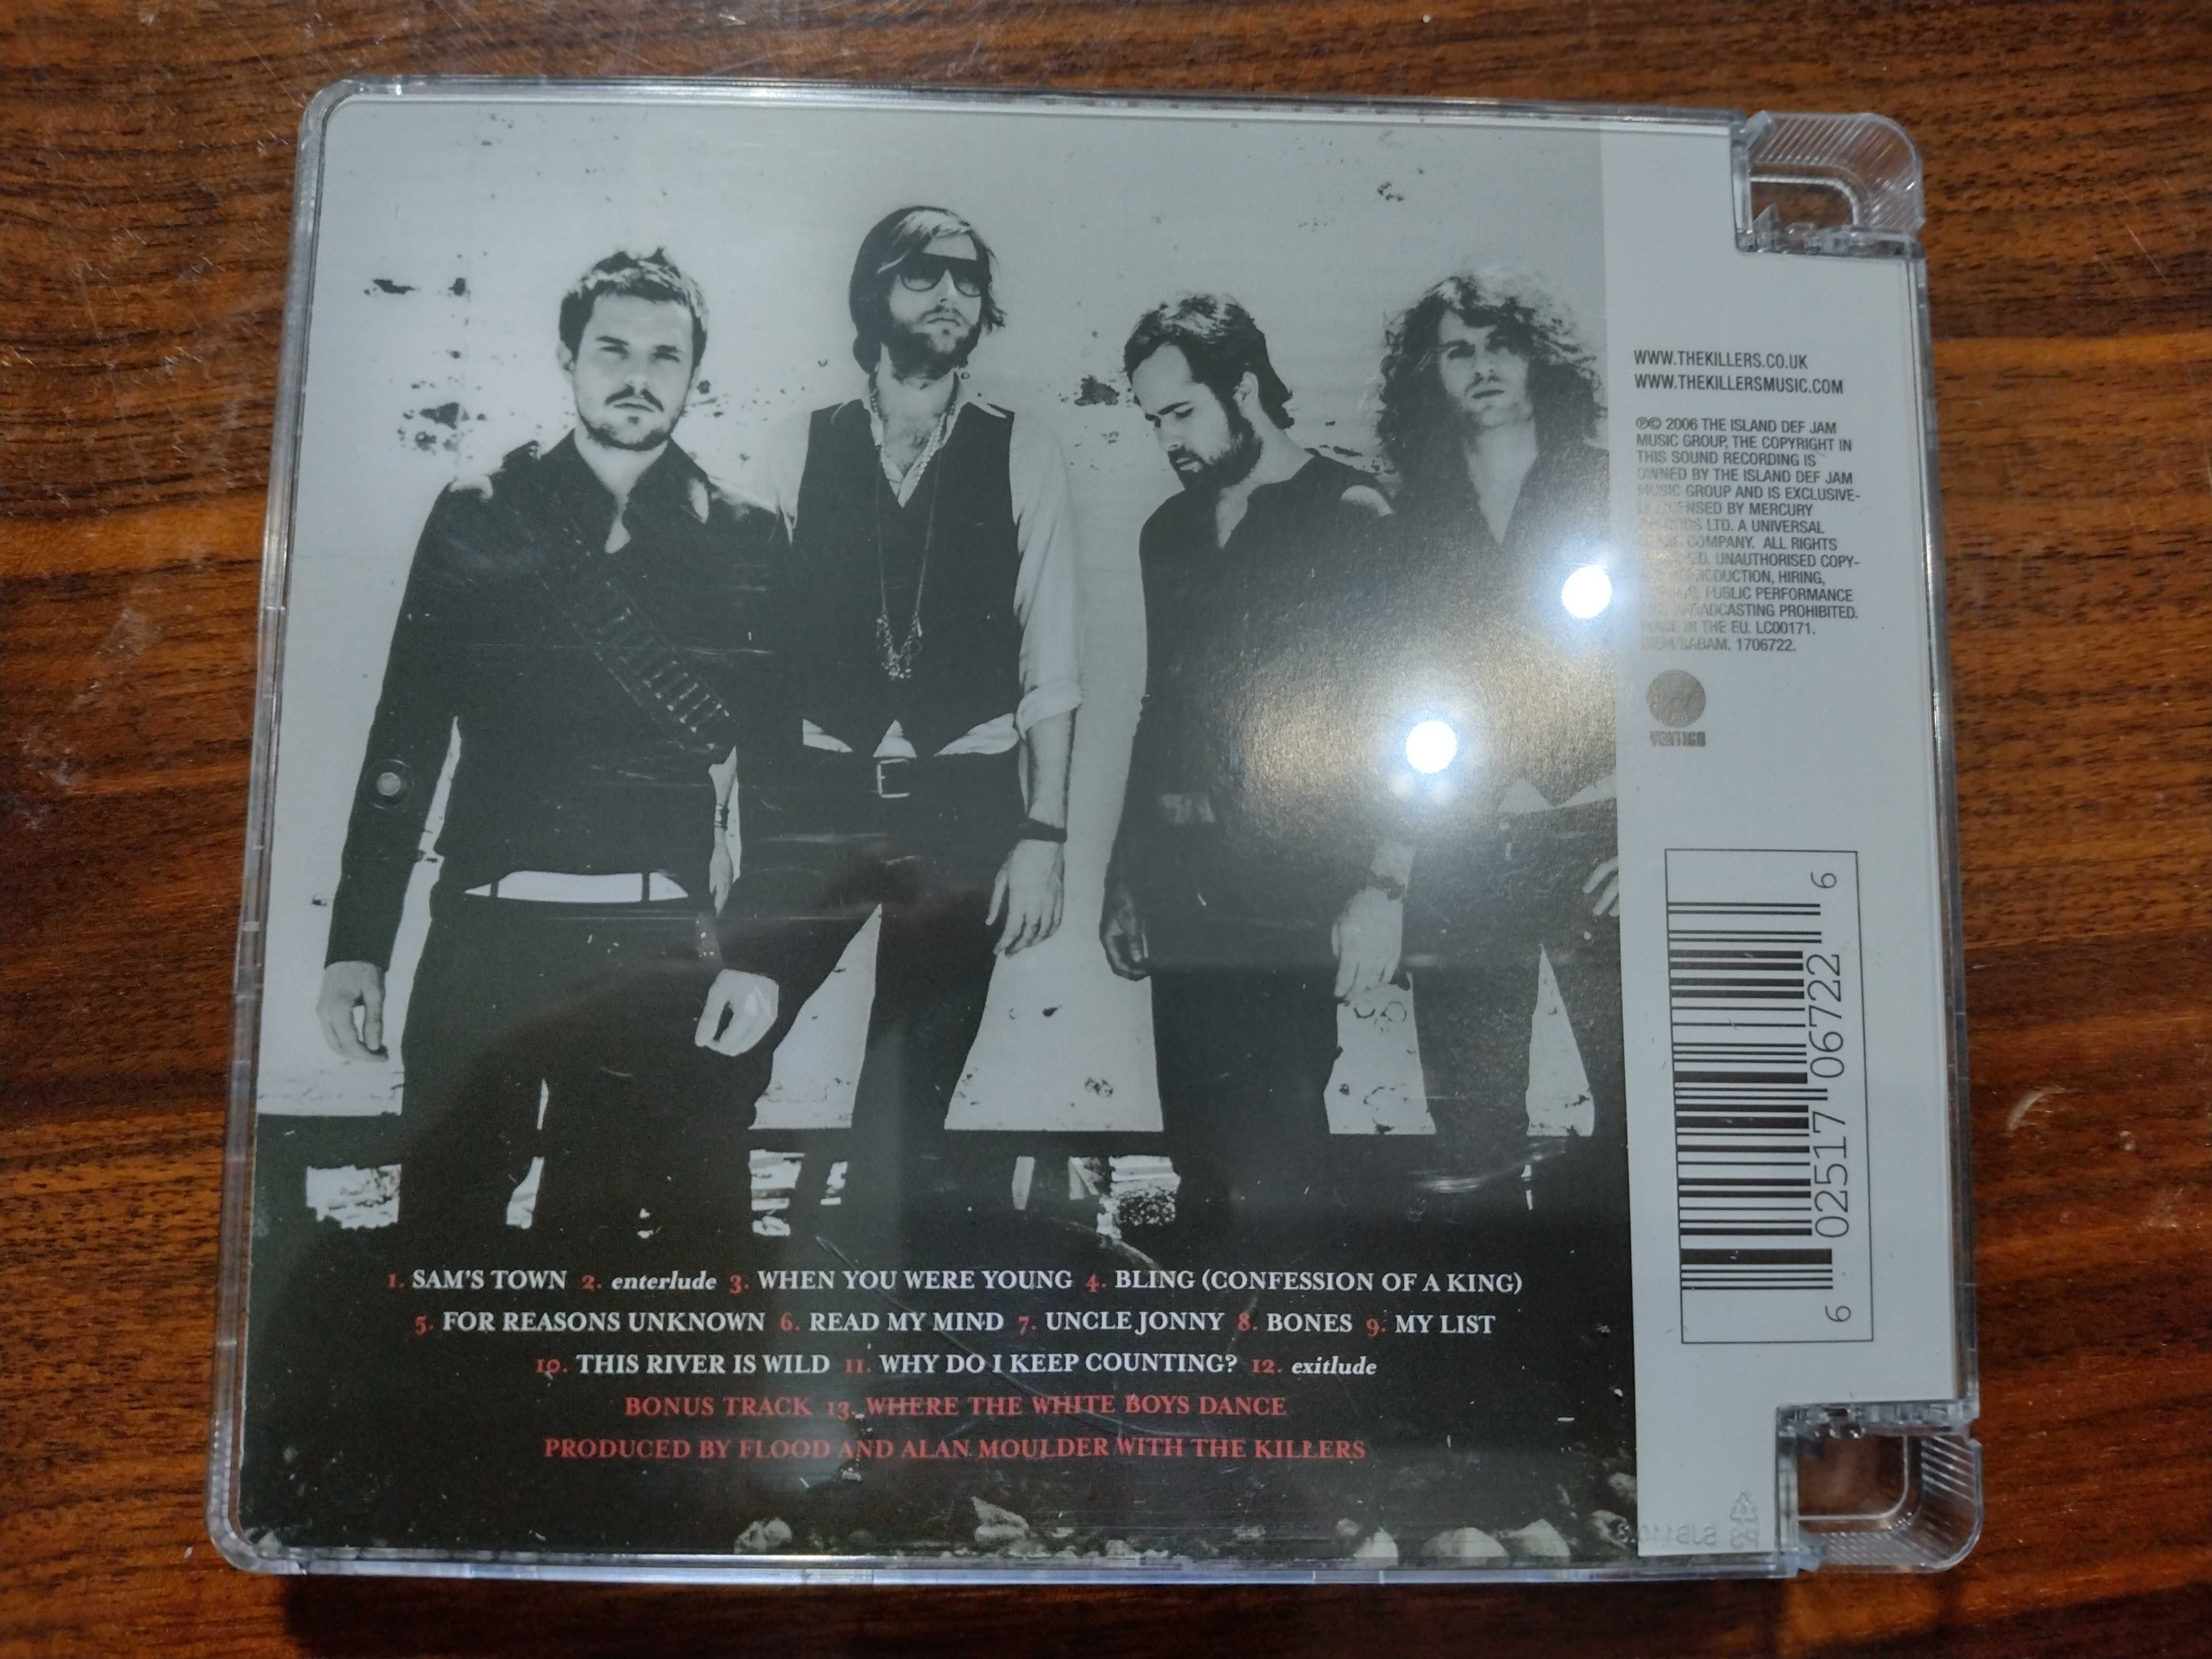 Płyta CD The Killers, "Sam's town"